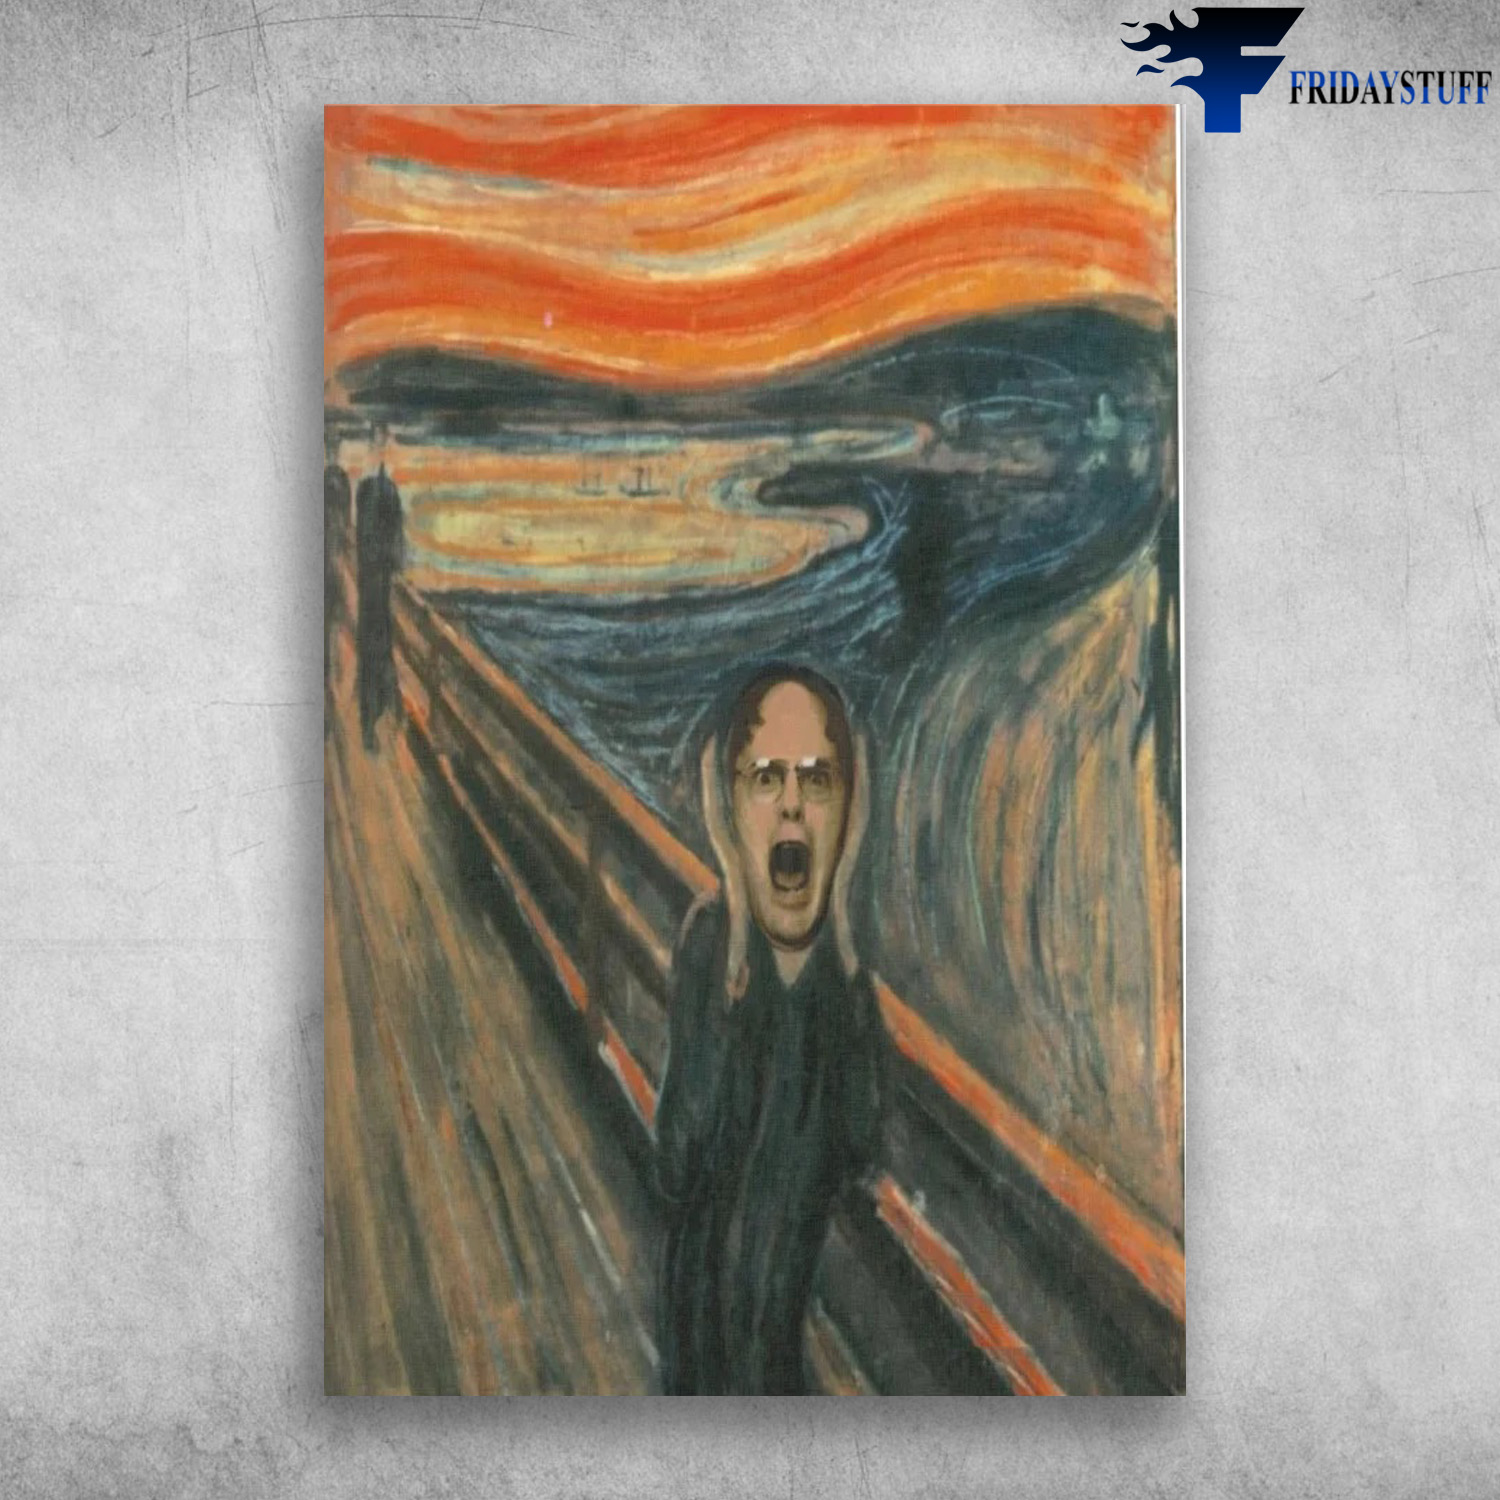 Dwight Schrute In The Scream